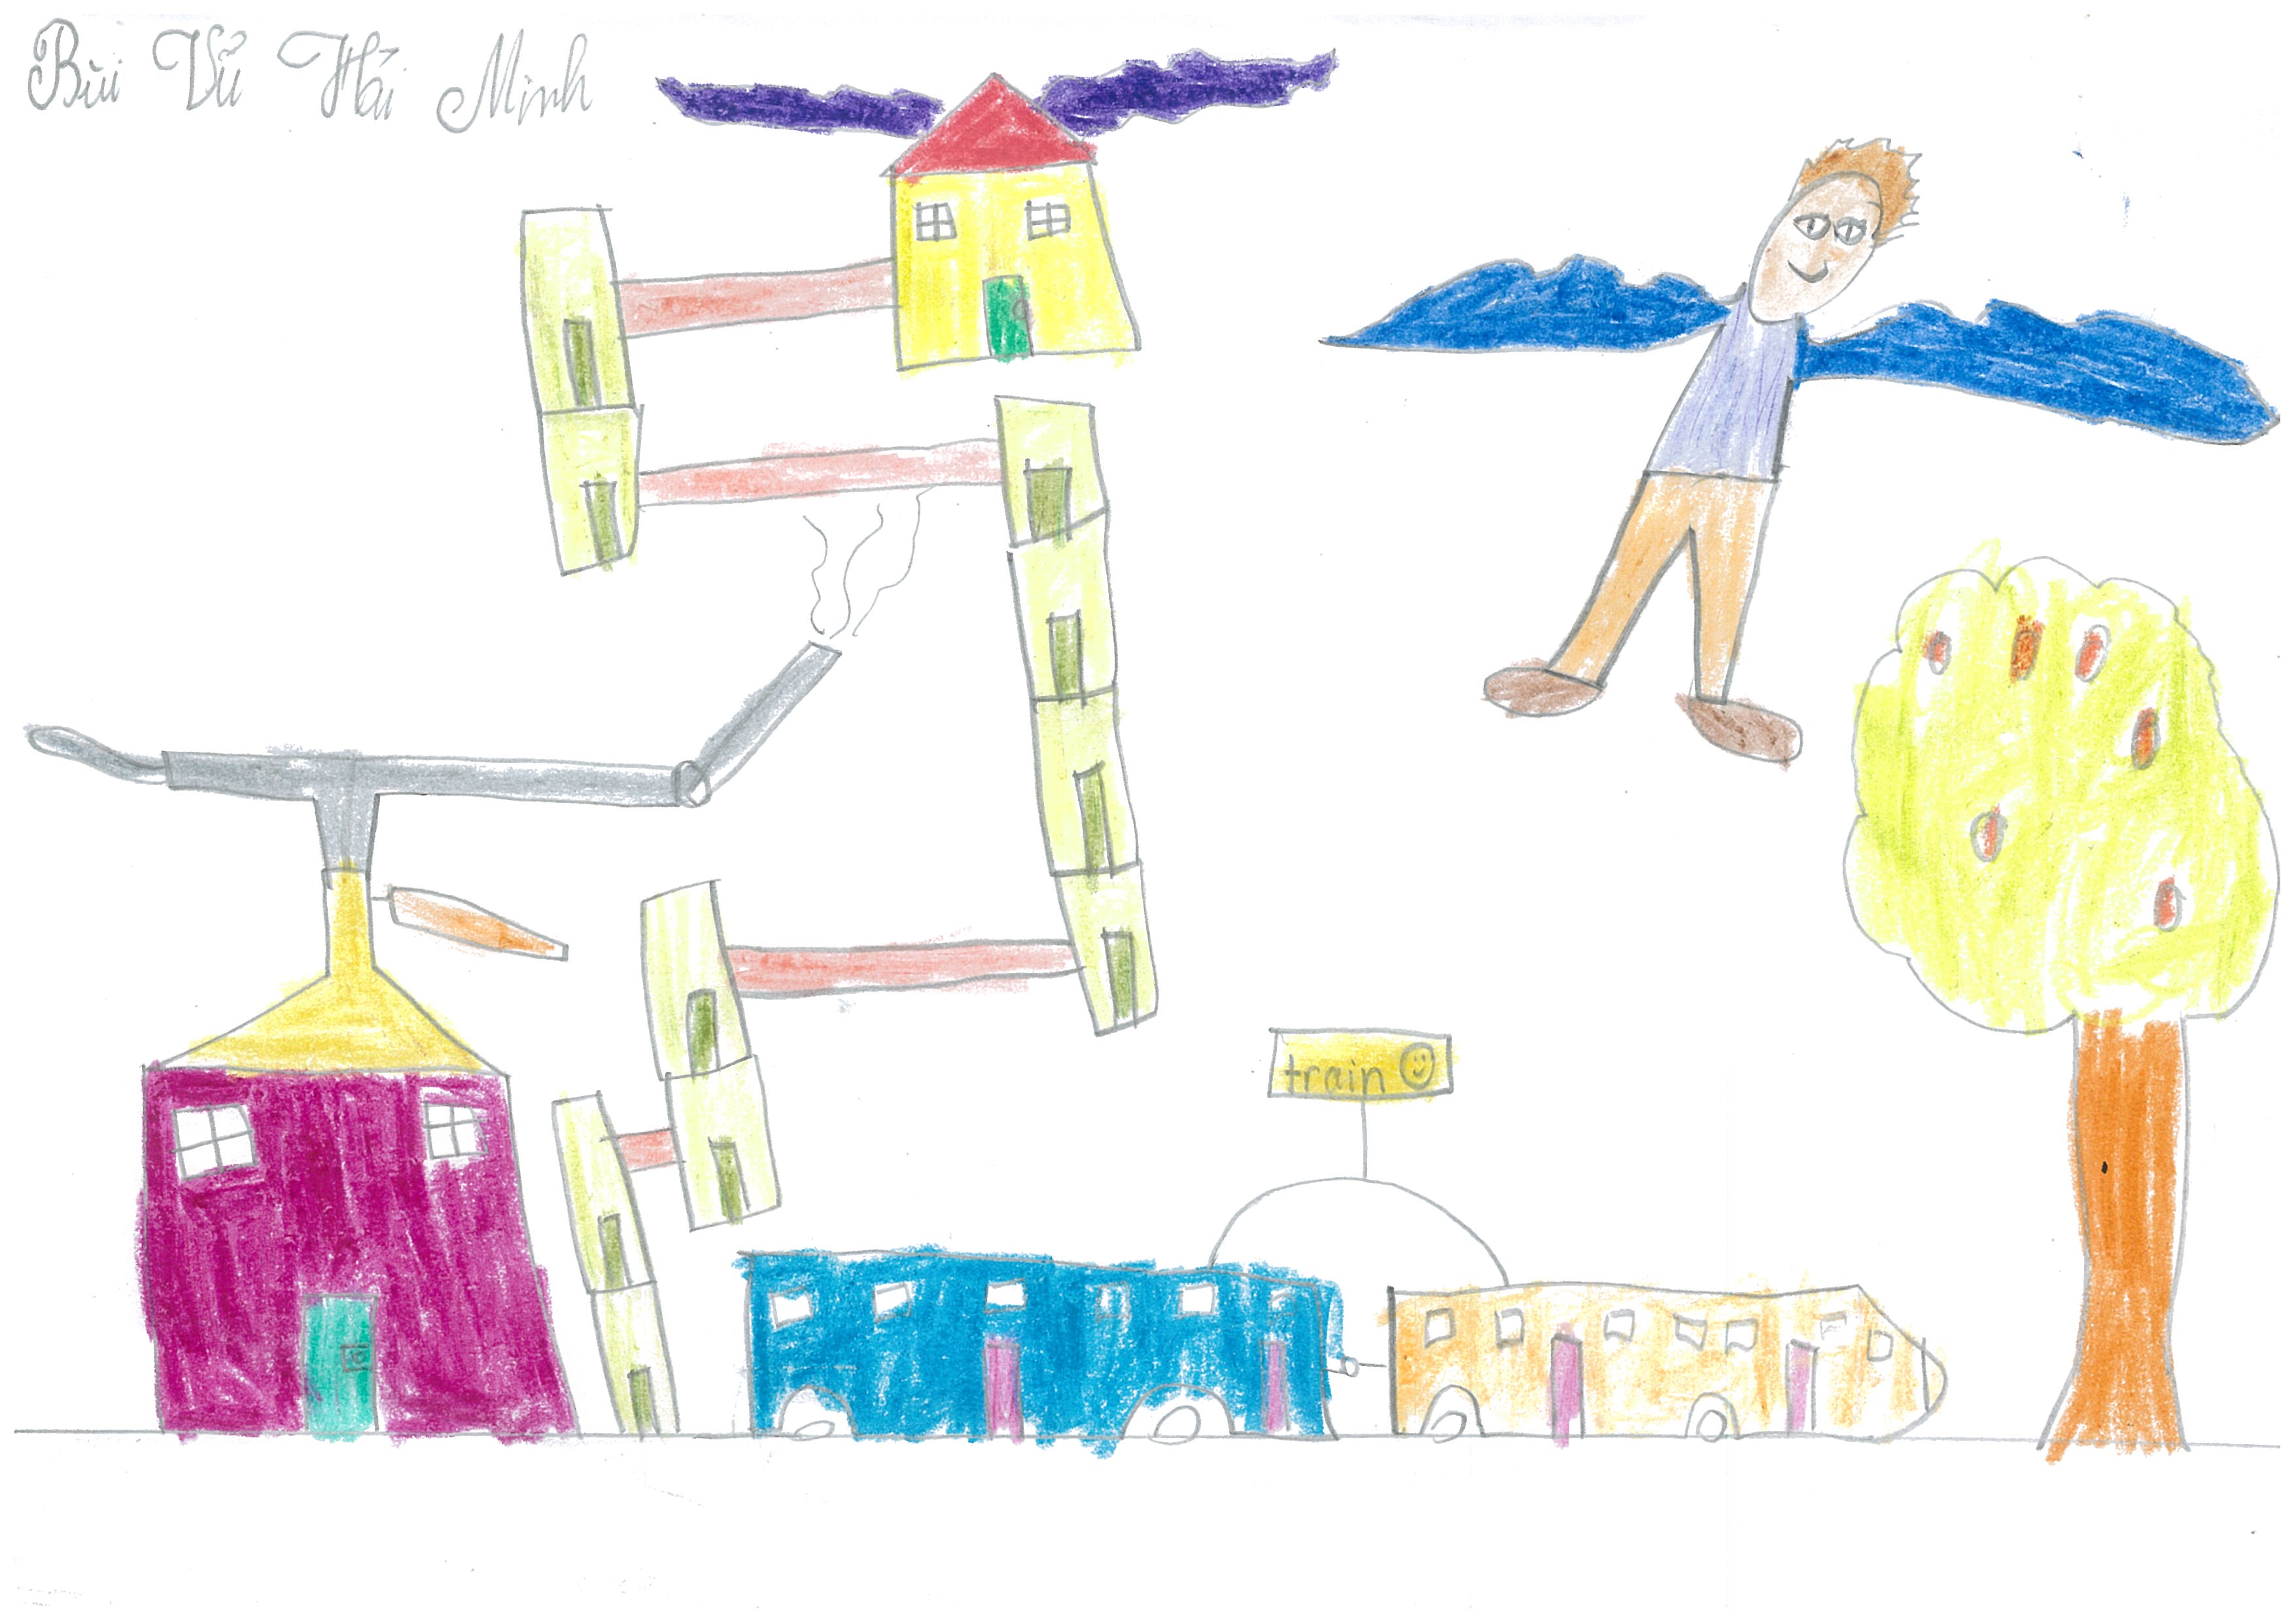 Các em HS hưởng ứng cuộc thi vẽ tranh dành cho thiếu nhi với chủ đề Thành  phố hòa bình  Peaceful towns  Phòng GDĐT Quận Hải An